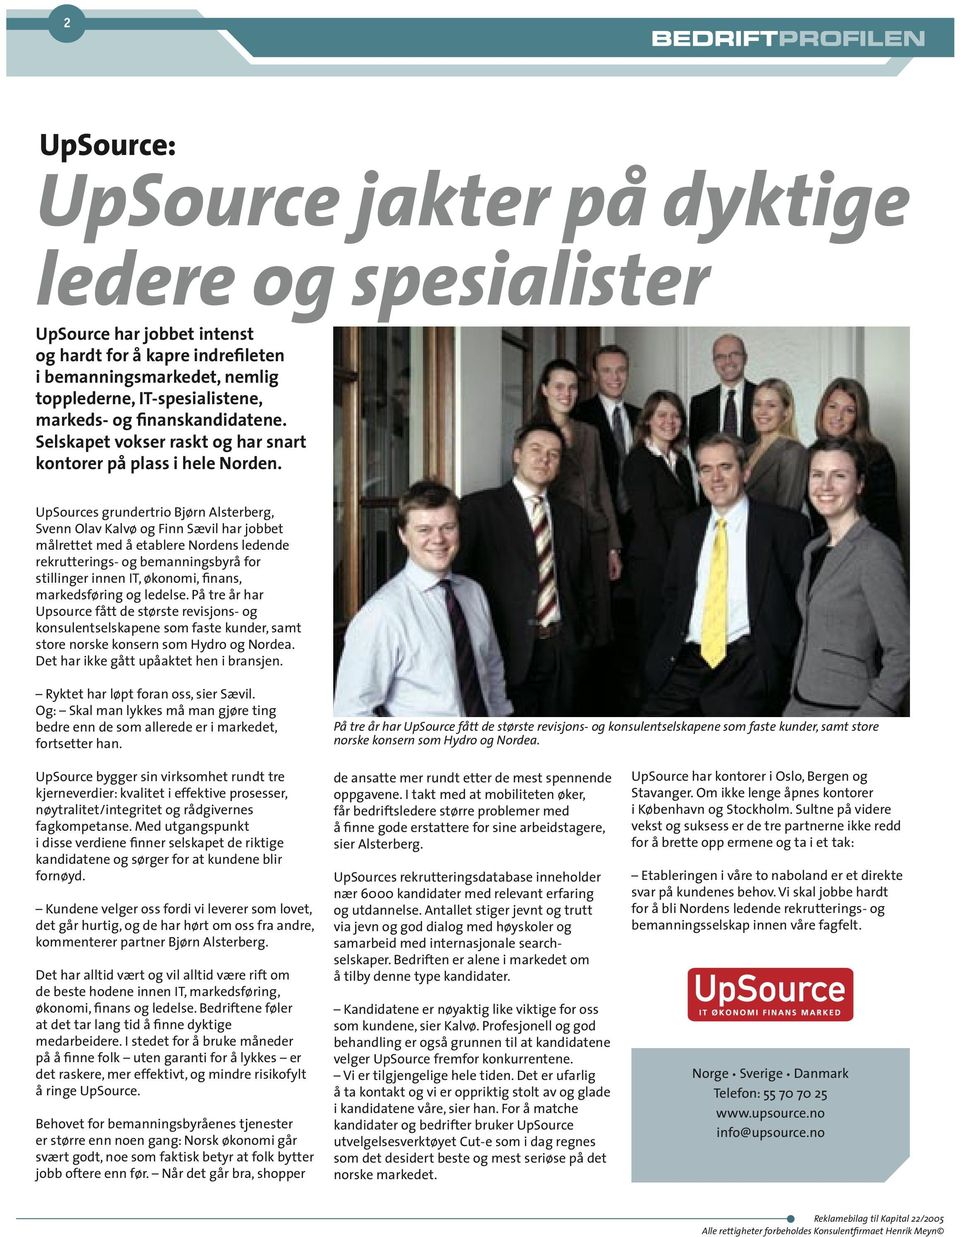 UpSources grundertrio Bjørn Alsterberg, Svenn Olav Kalvø og Finn Sævil har jobbet målrettet med å etablere Nordens ledende rekrutterings- og bemanningsbyrå for stillinger innen IT, økonomi, finans,